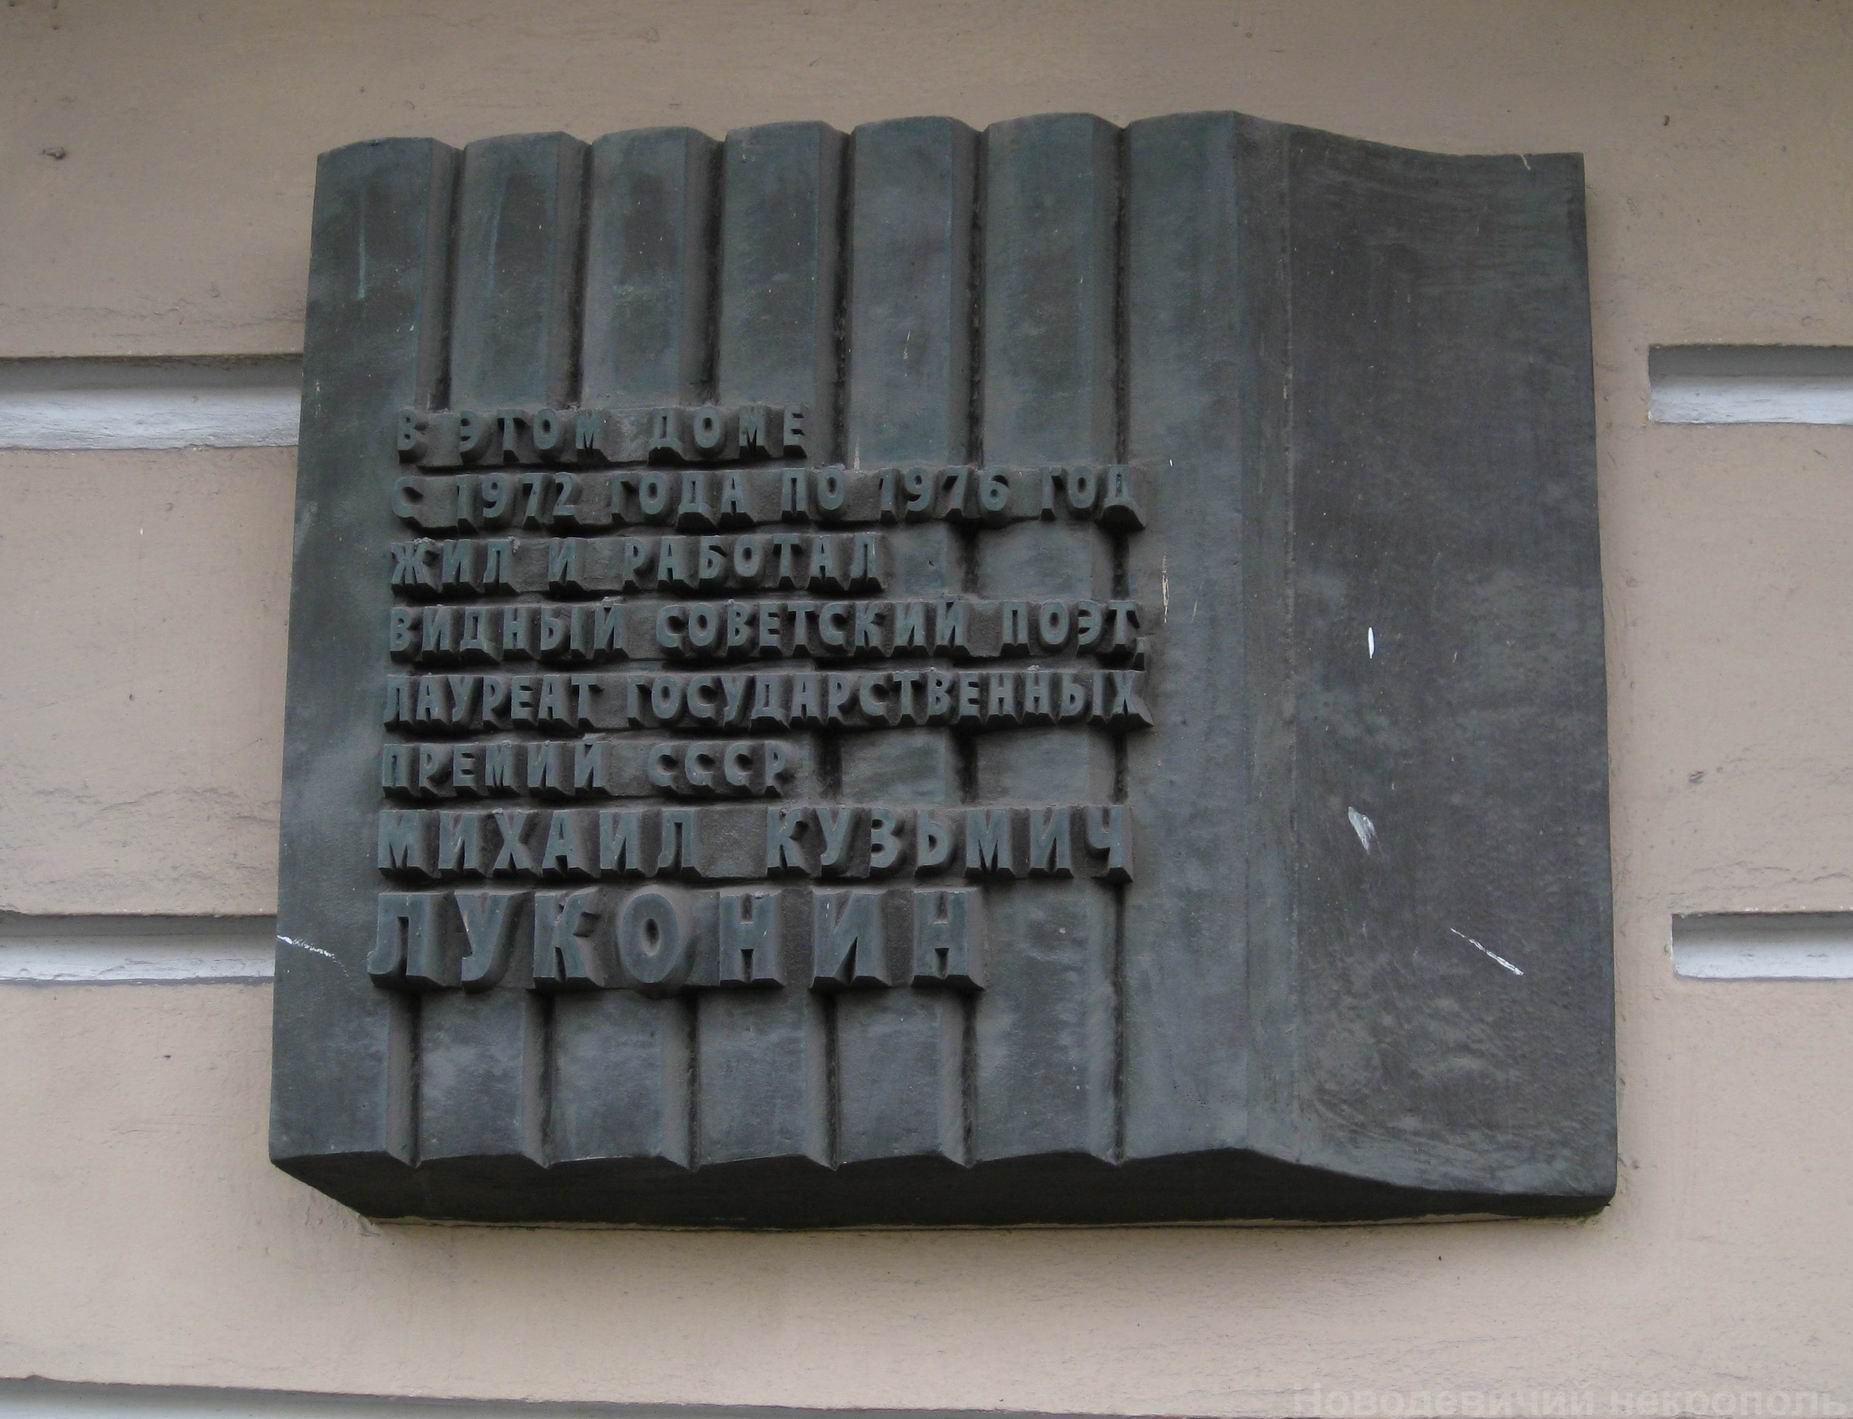 Мемориальная доска Луконину М.К. (1918–1976), арх. С.И.Смирнов, на Новом Арбате, дом 23, открыта 7.8.1979.